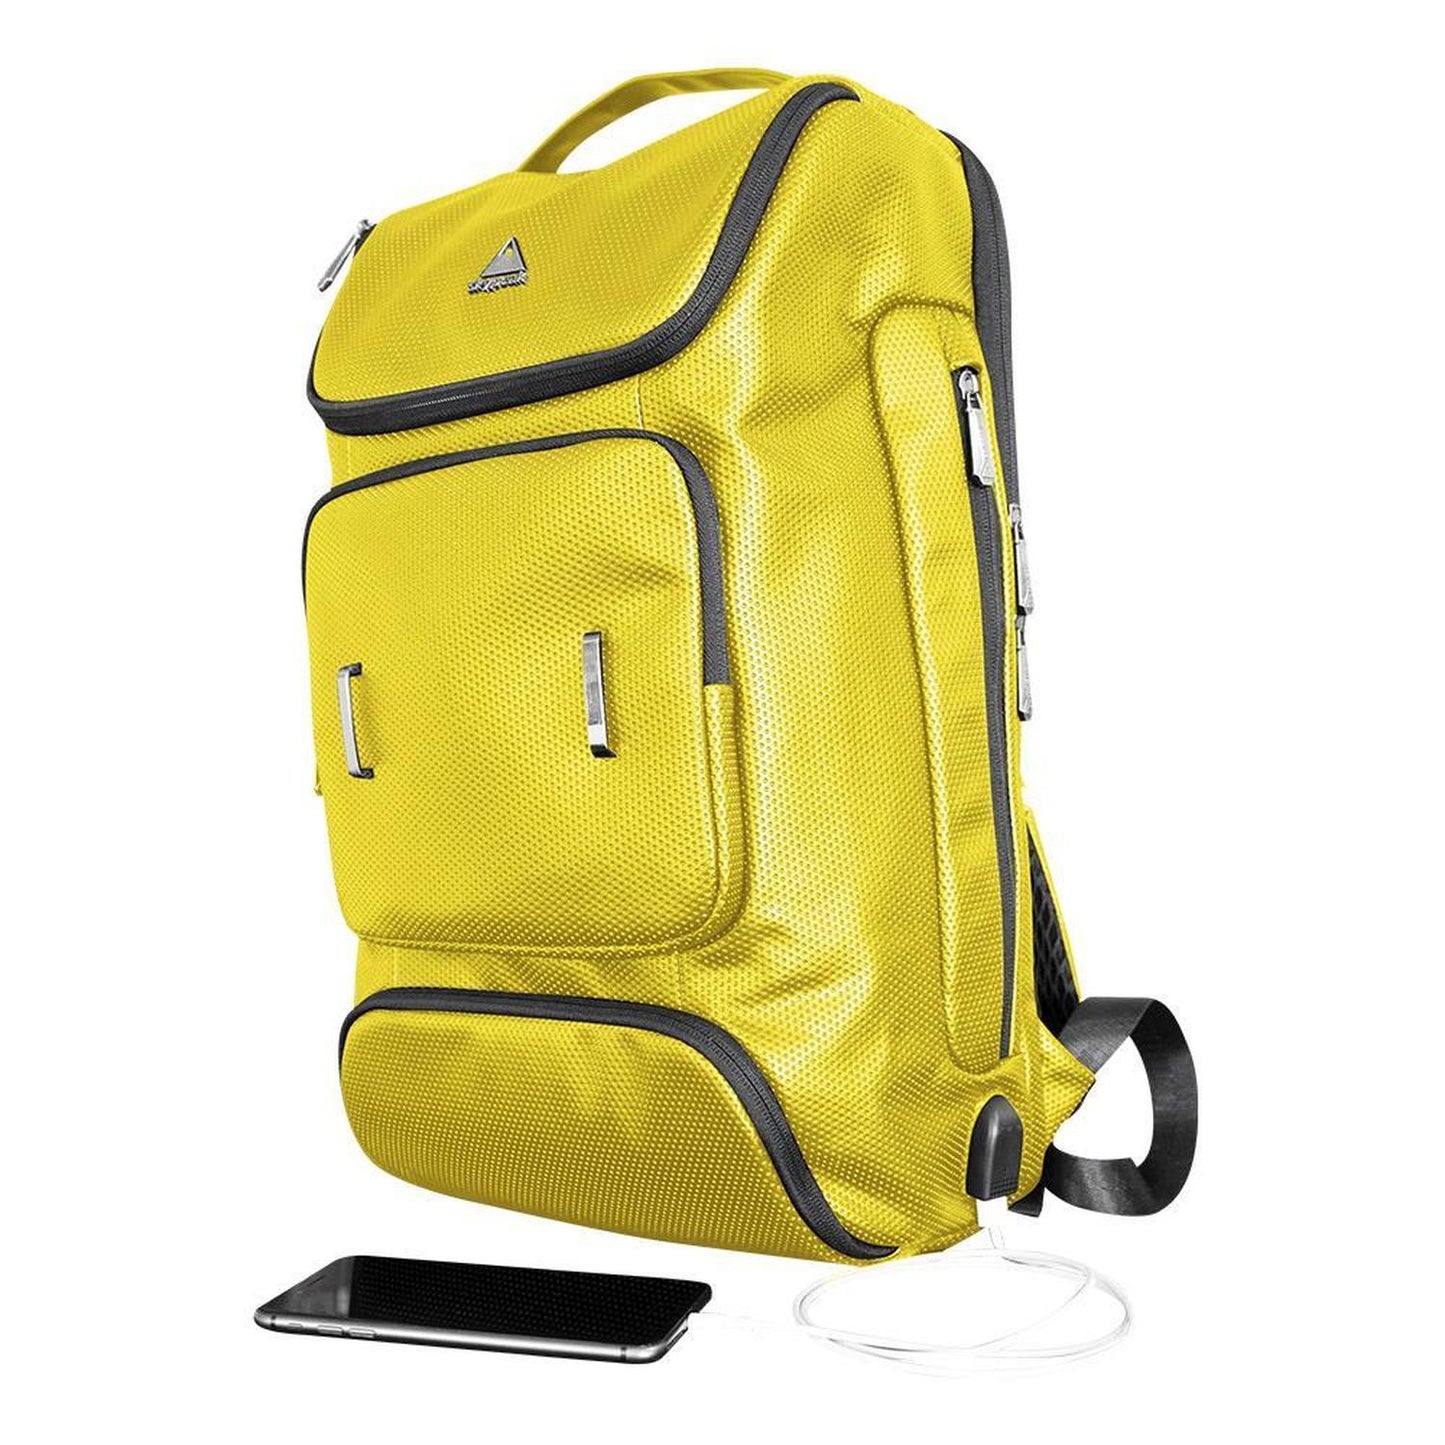 Mochila backpack Skypeak Extra grande para ordenadores de 15,6” hasta 17". NUR-117YL